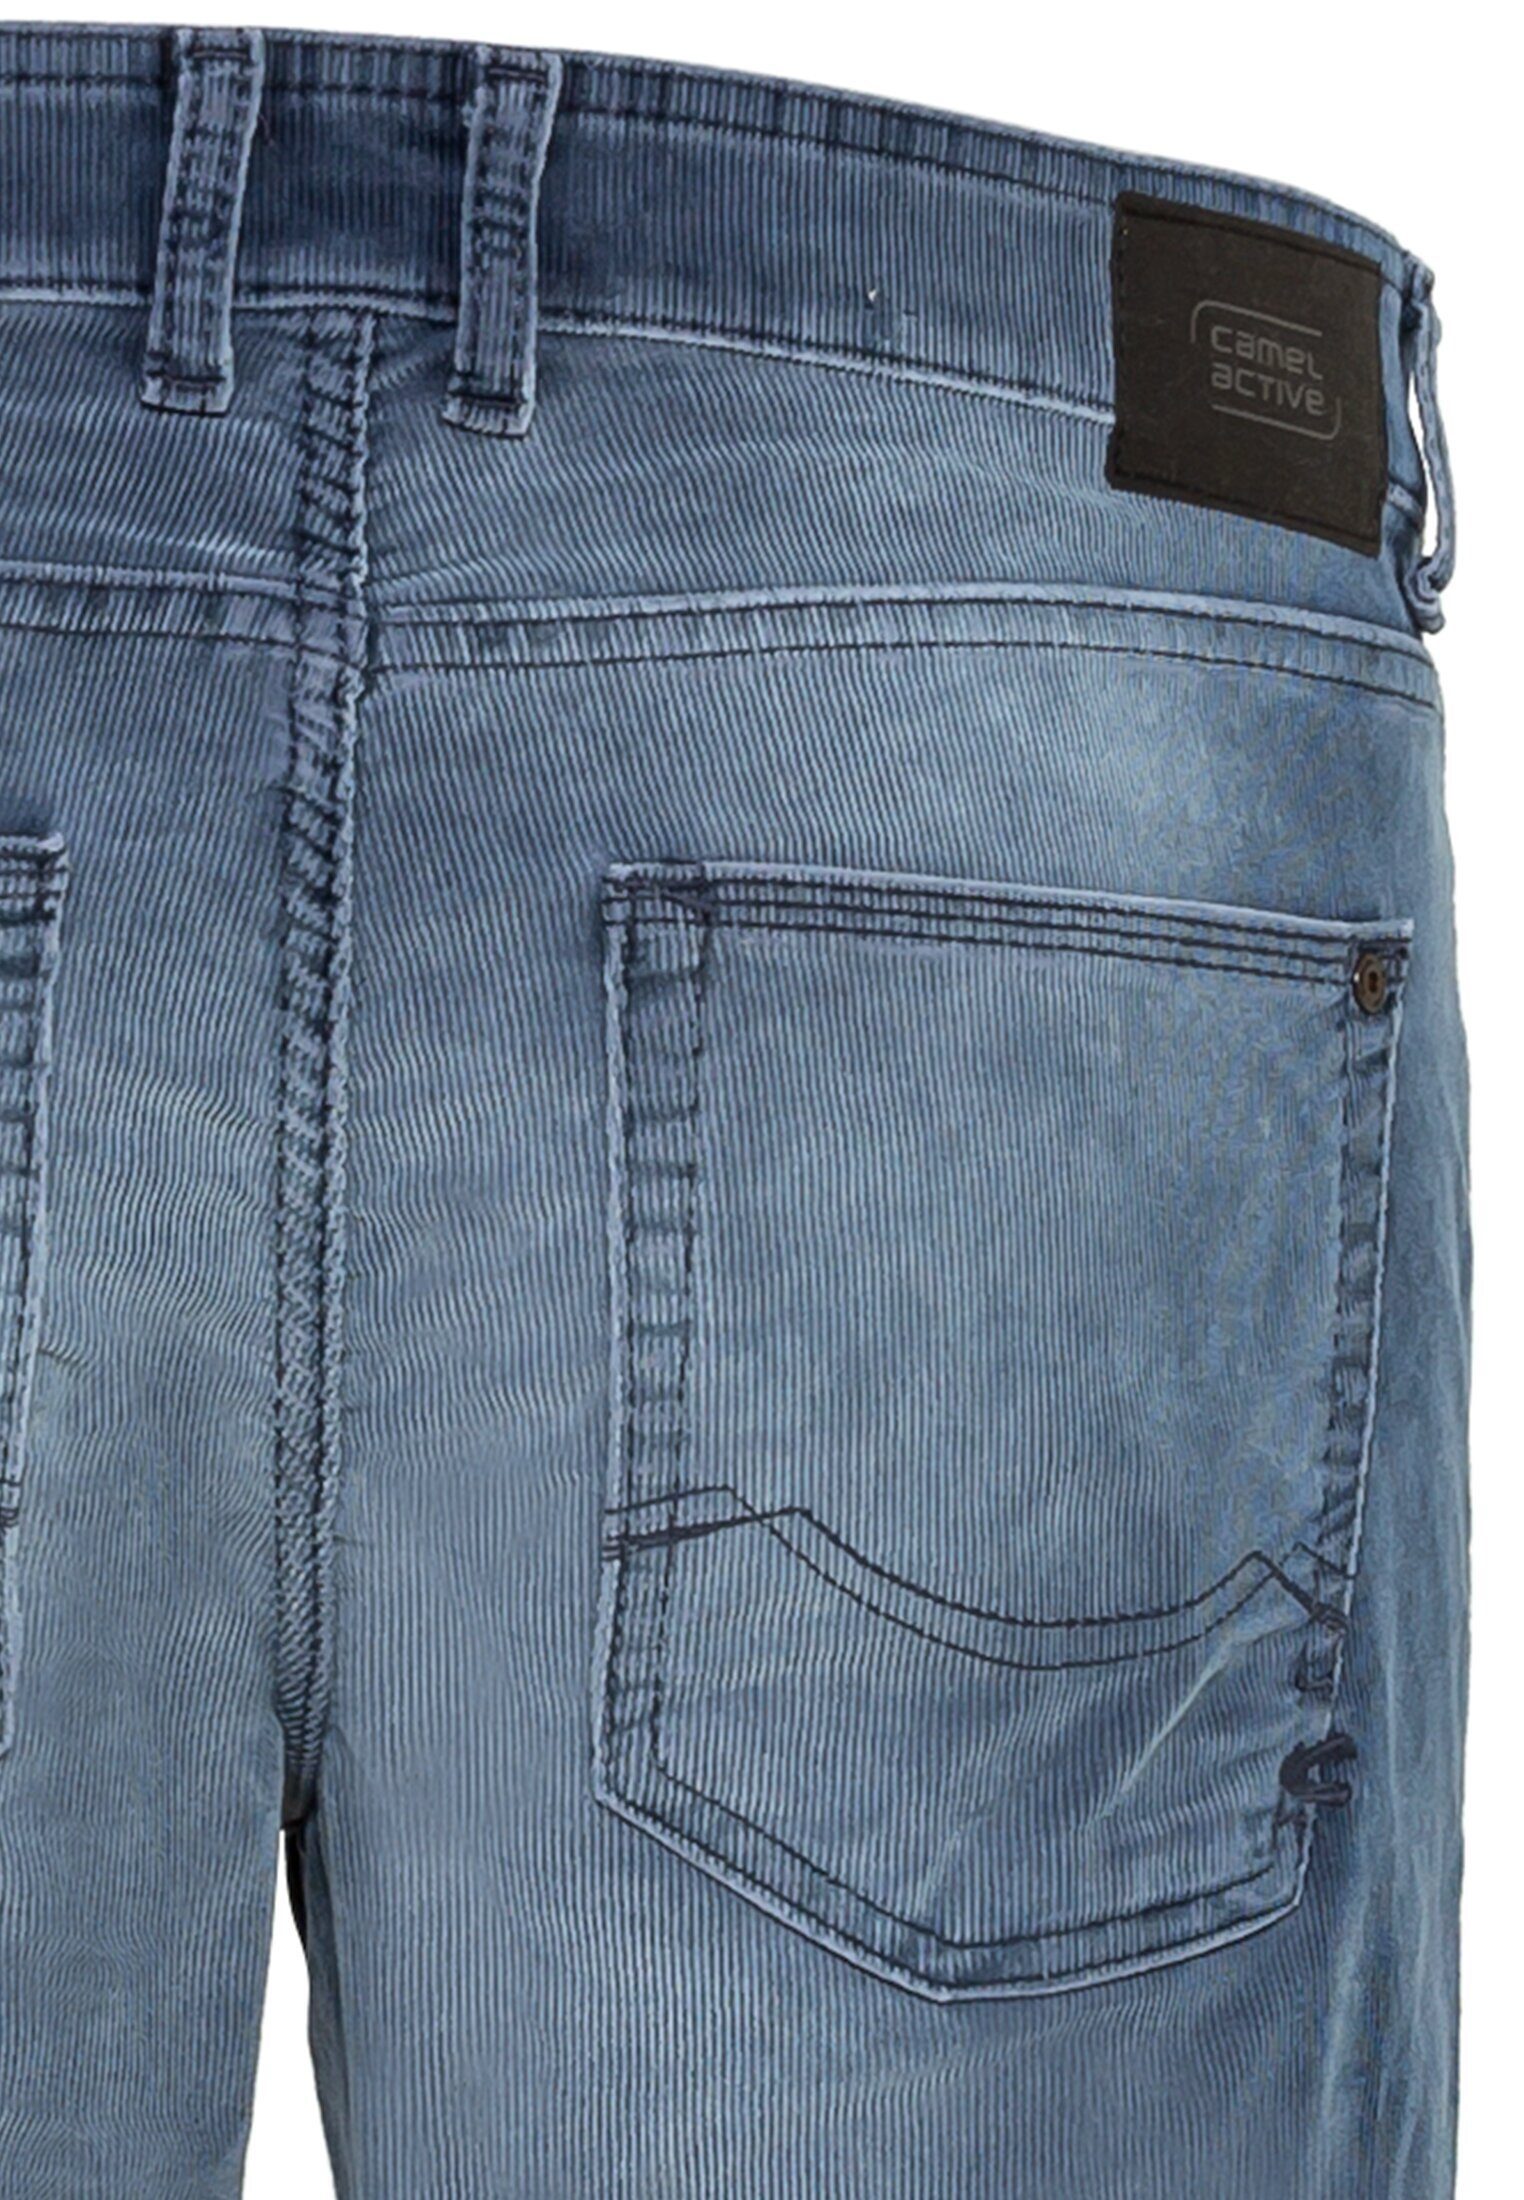 camel active 5-Pocket-Jeans Cordhose Fit Blau Slim